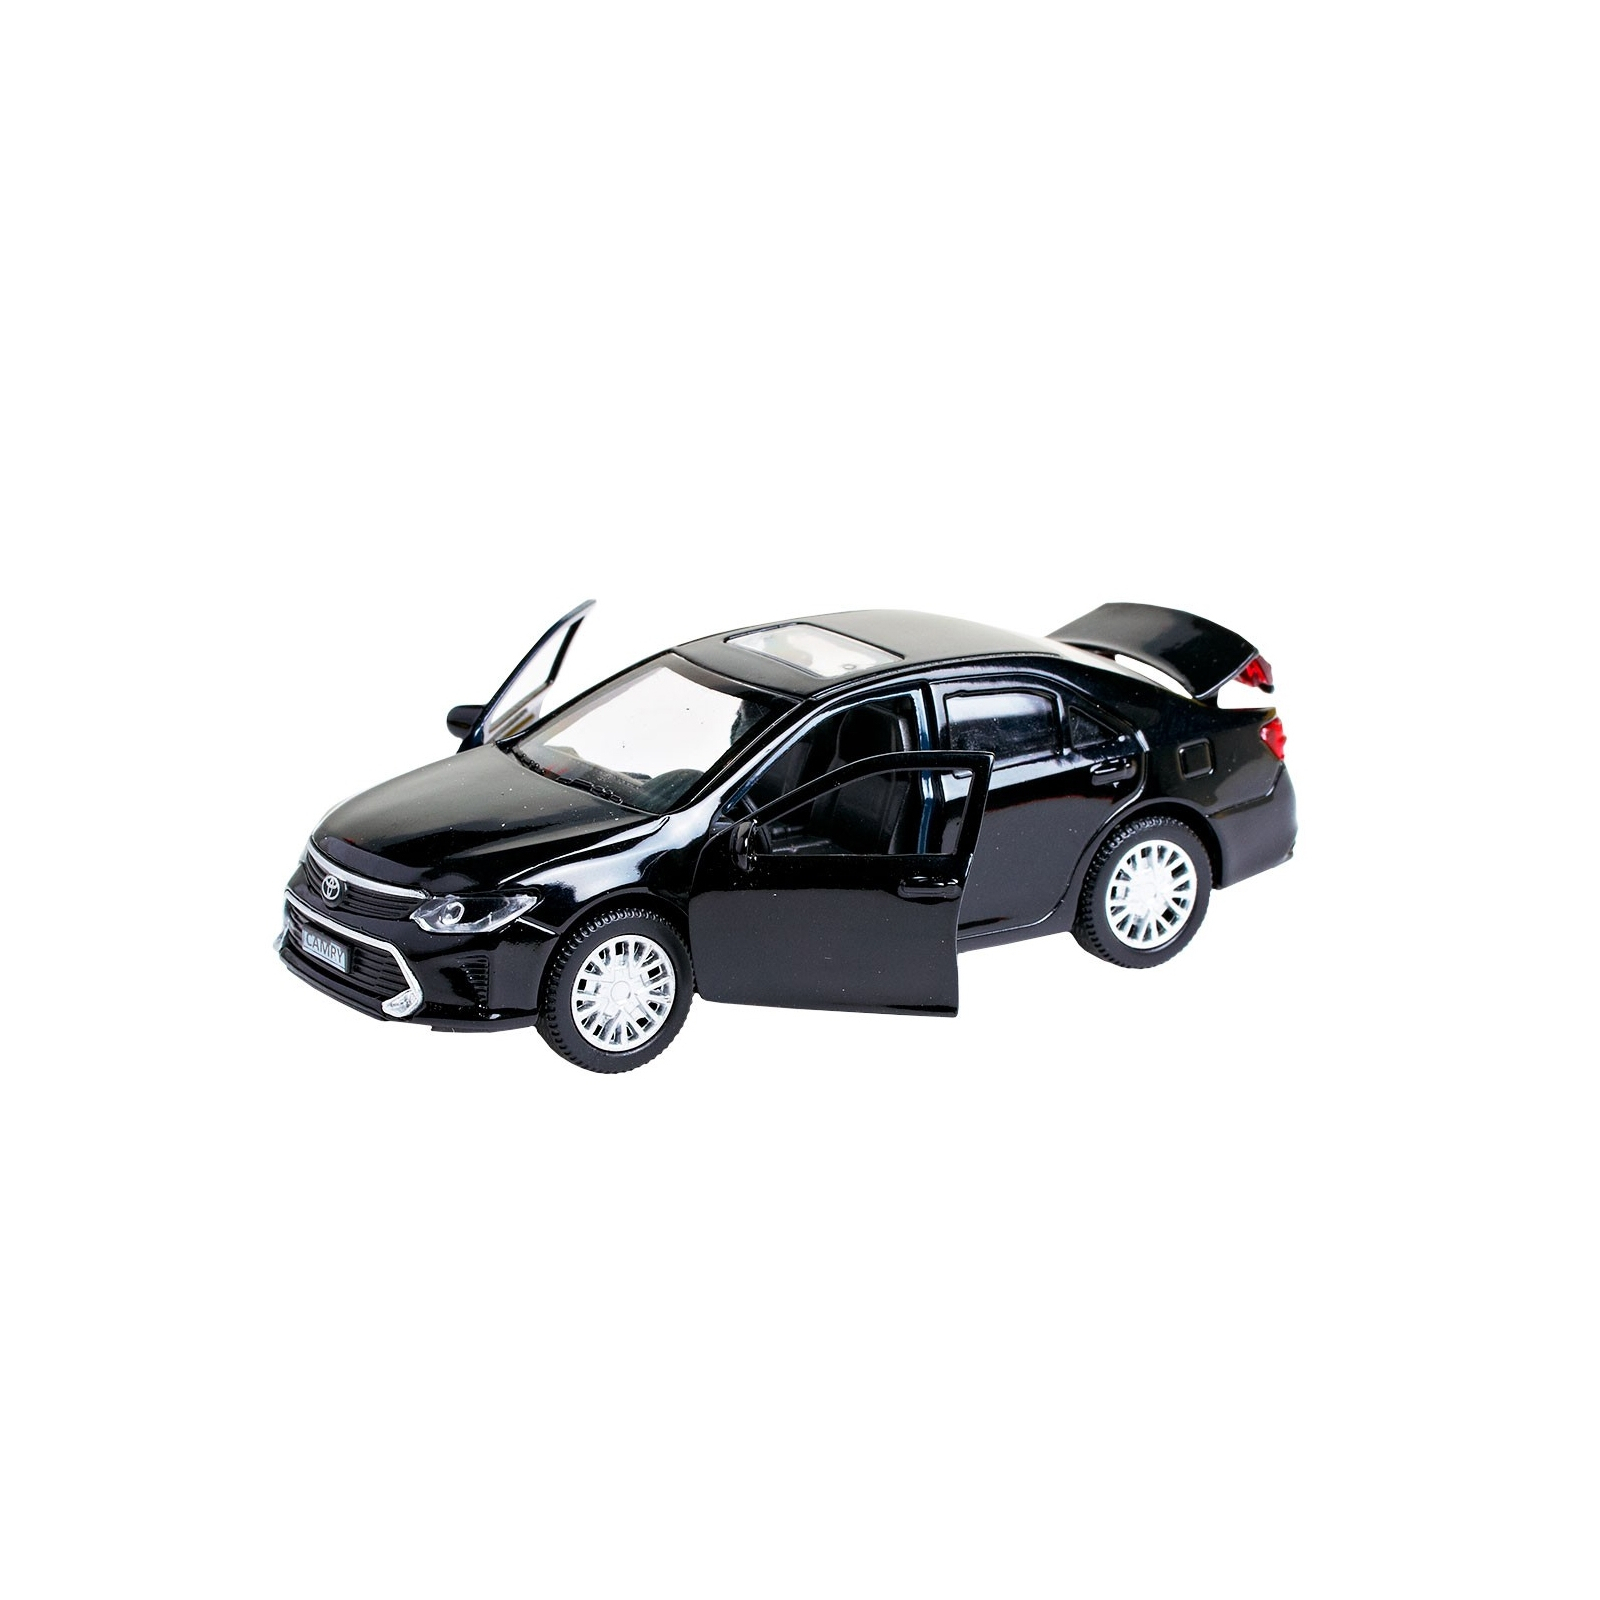 Машина Технопарк Toyota Camry черный (1:32) (CAMRY-BK) изображение 6